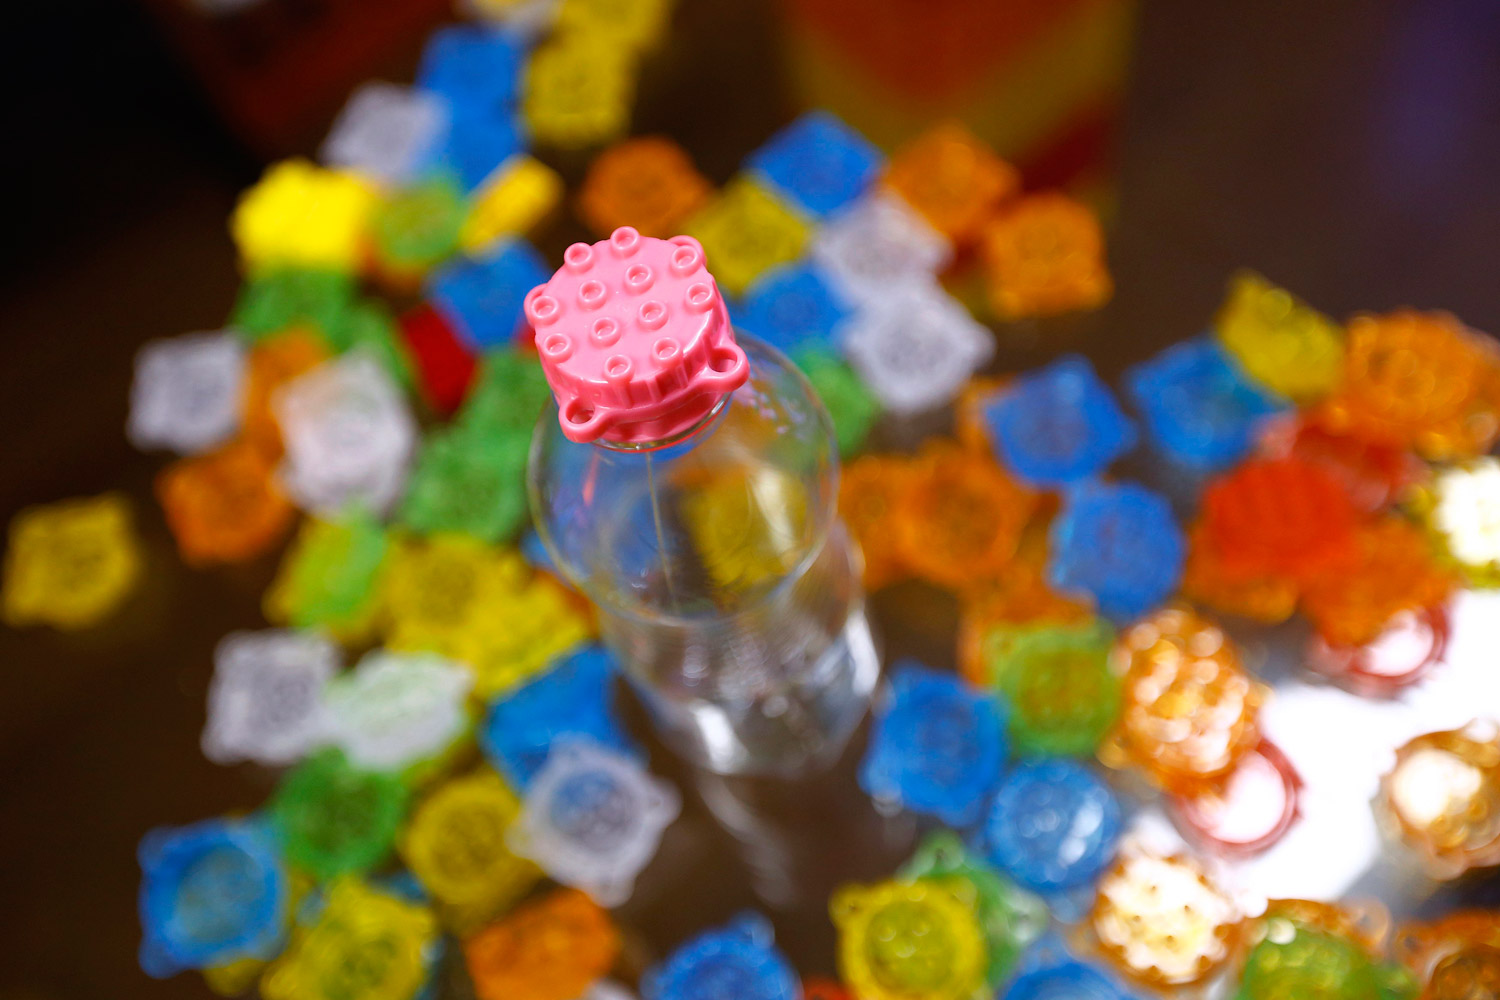 Tapones Lego, una vuelta de tuerca a los tradicionales juegos de chapas